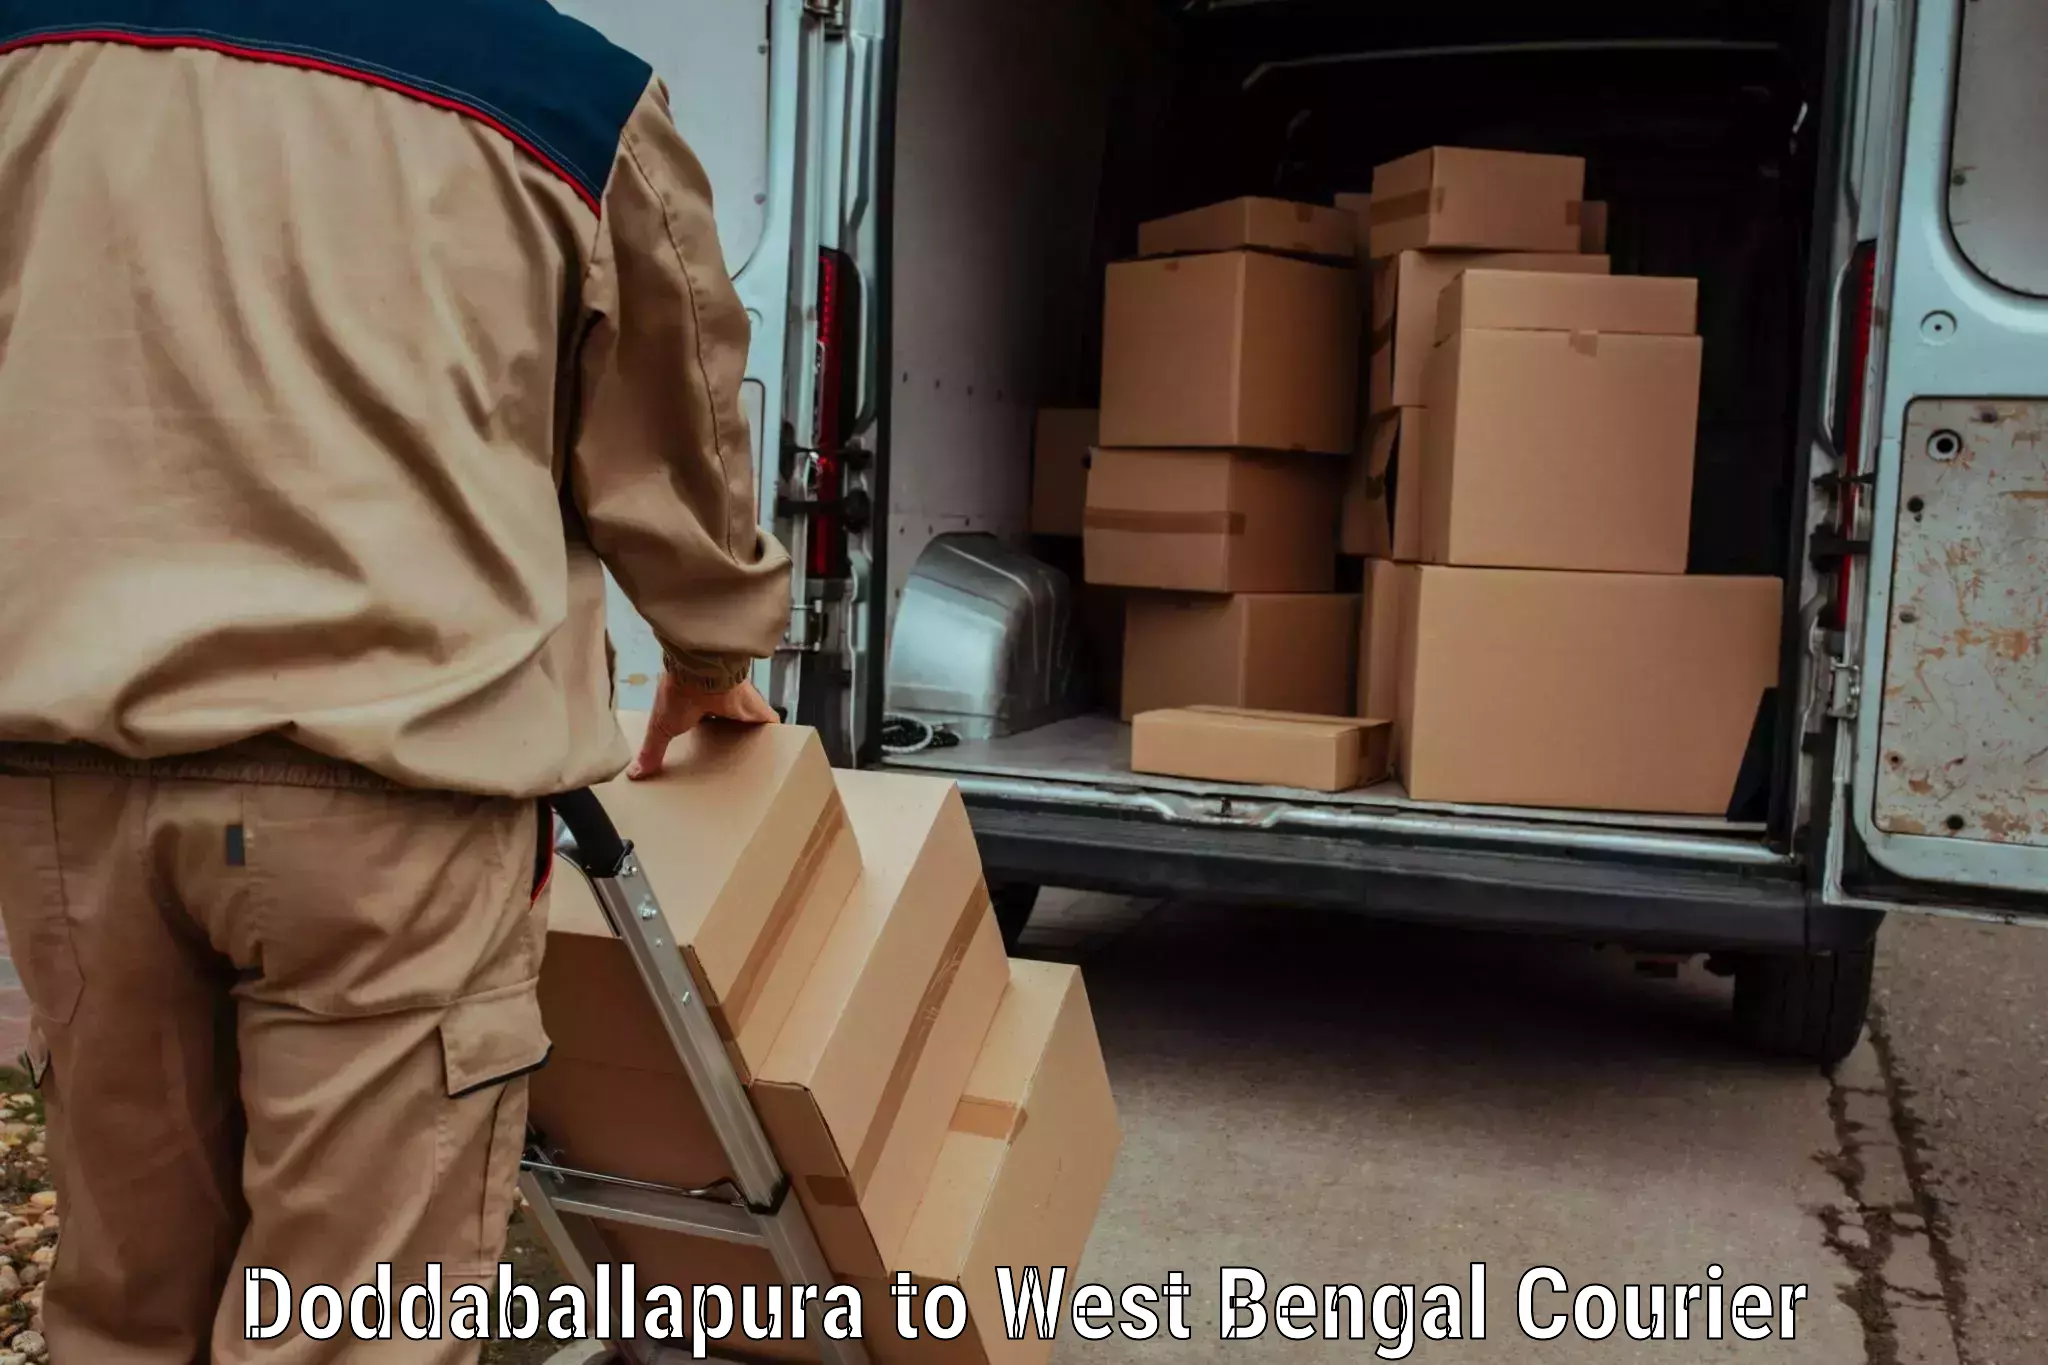 Luggage transport operations Doddaballapura to West Bengal